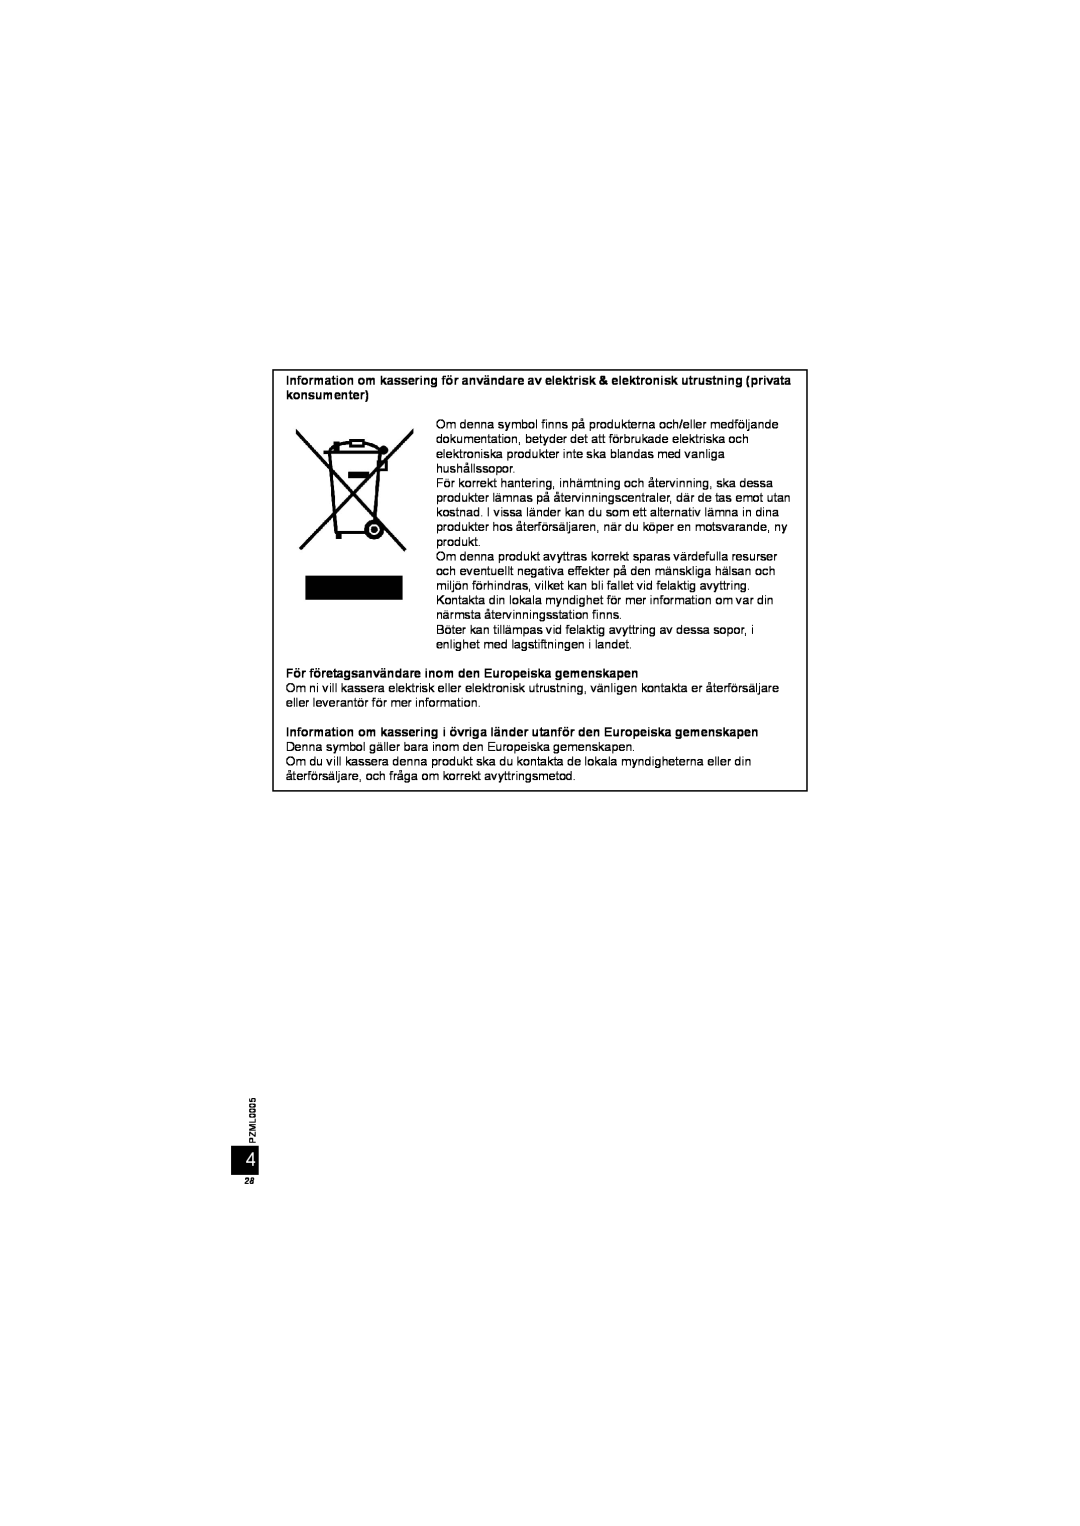 Panasonic DY-WL10 manual För företagsanvändare inom den Europeiska gemenskapen 